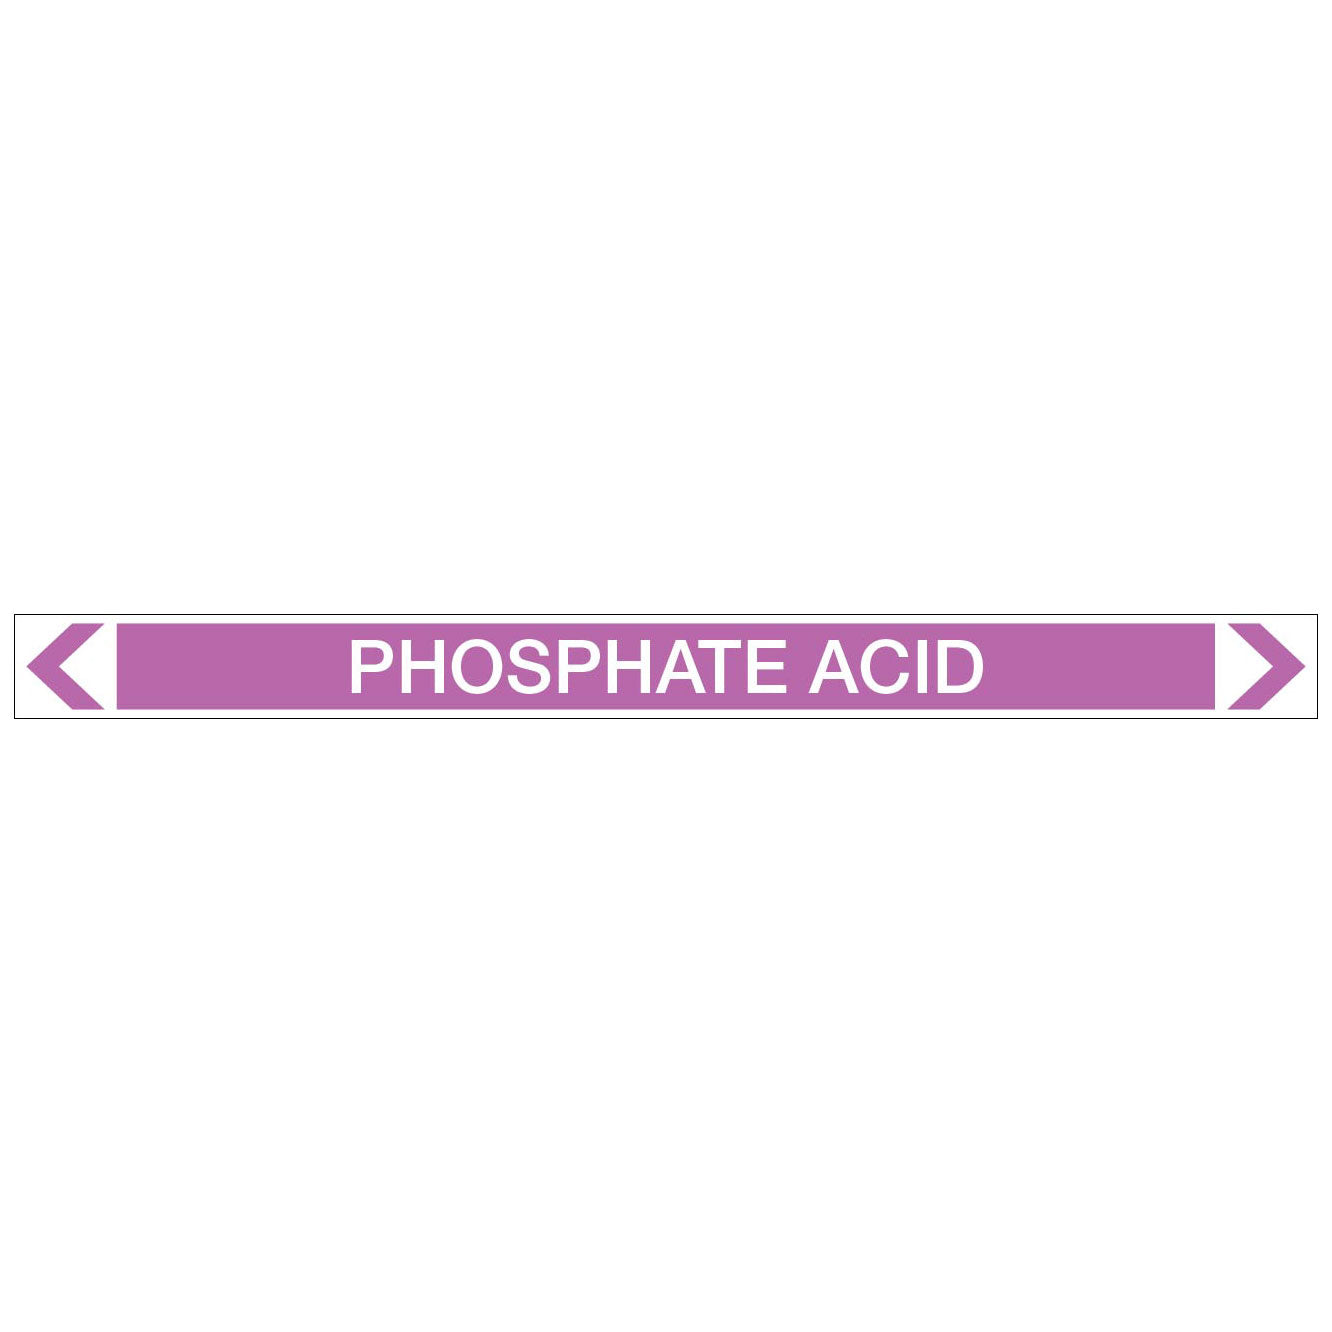 Alkalis / Acids - Phosphate Acid - Pipe Marker Sticker